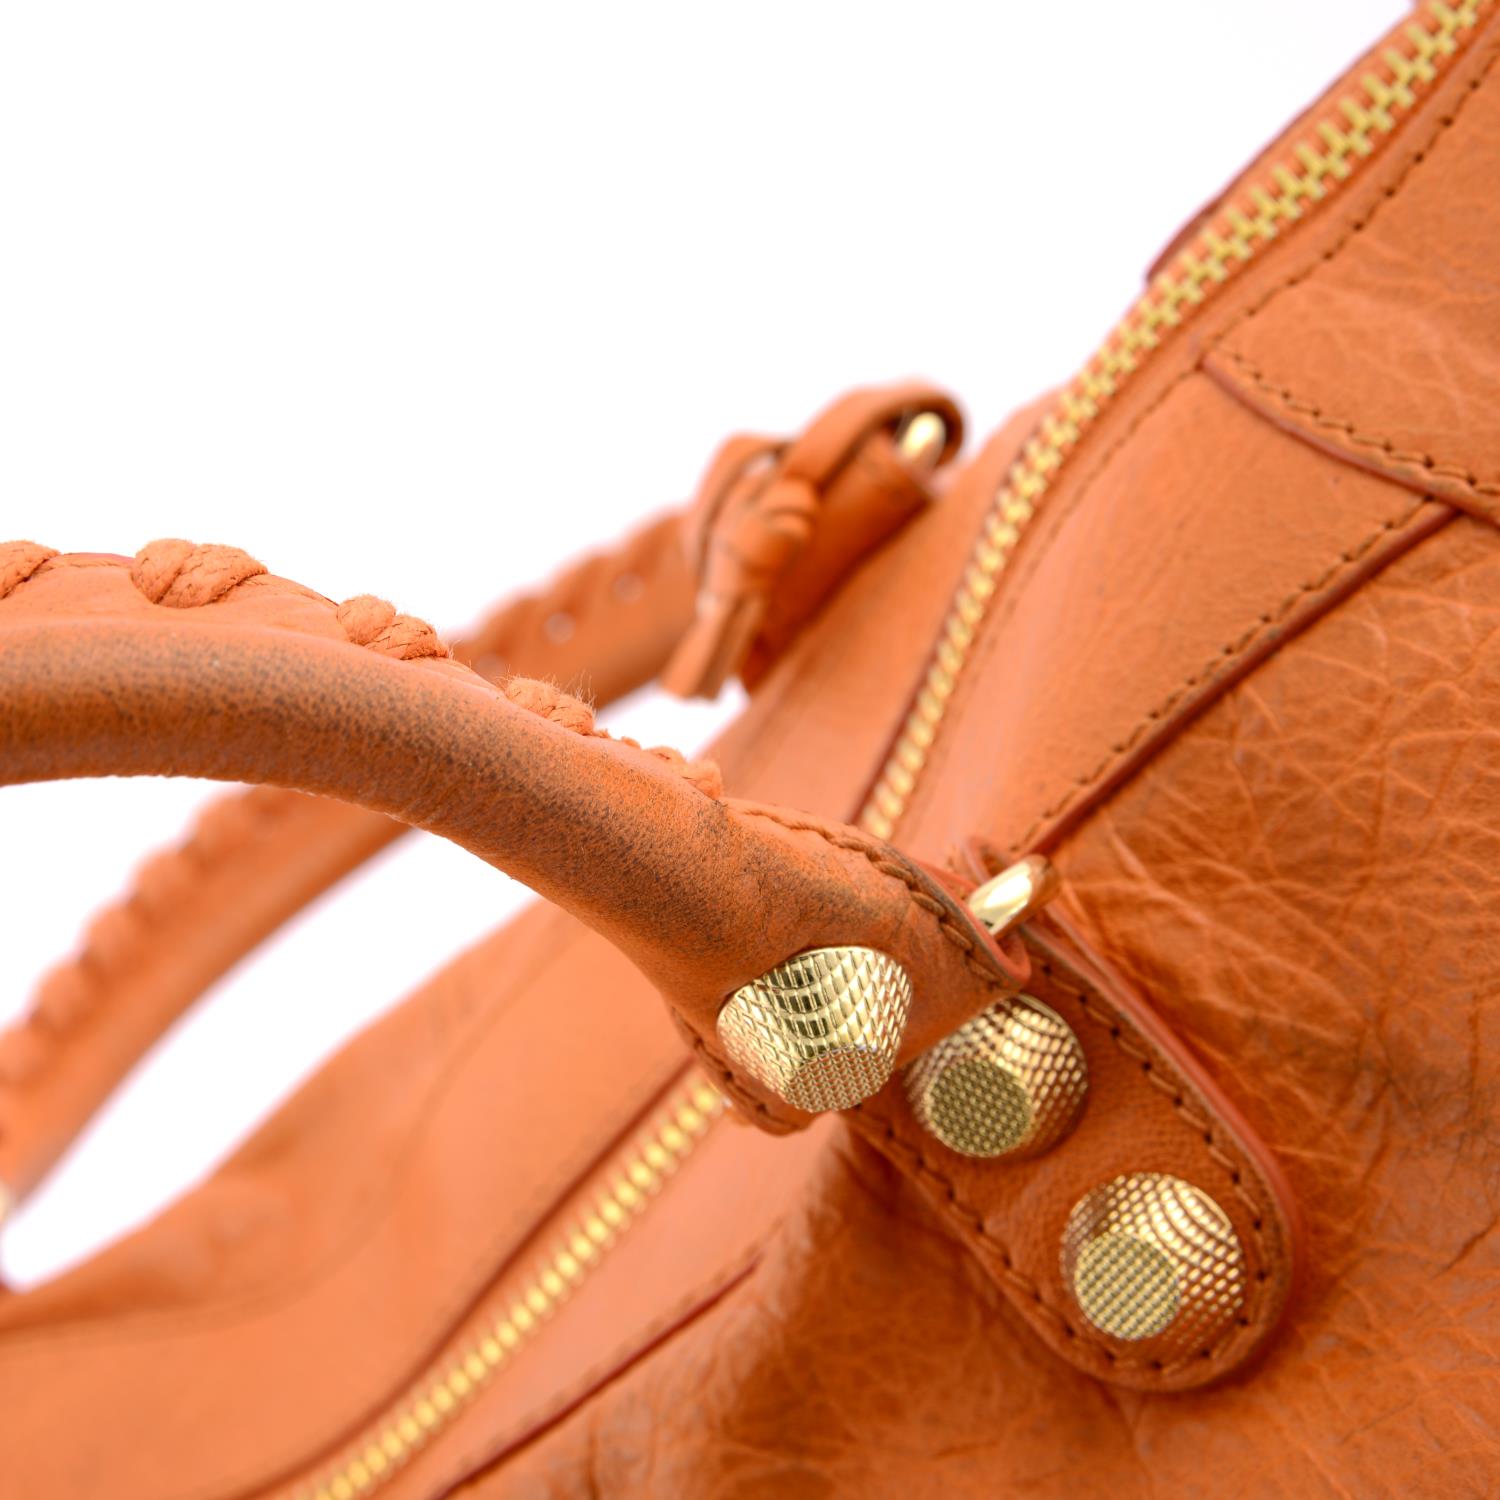 BALENCIAGA - an orange Giant Work handbag. - Image 4 of 7